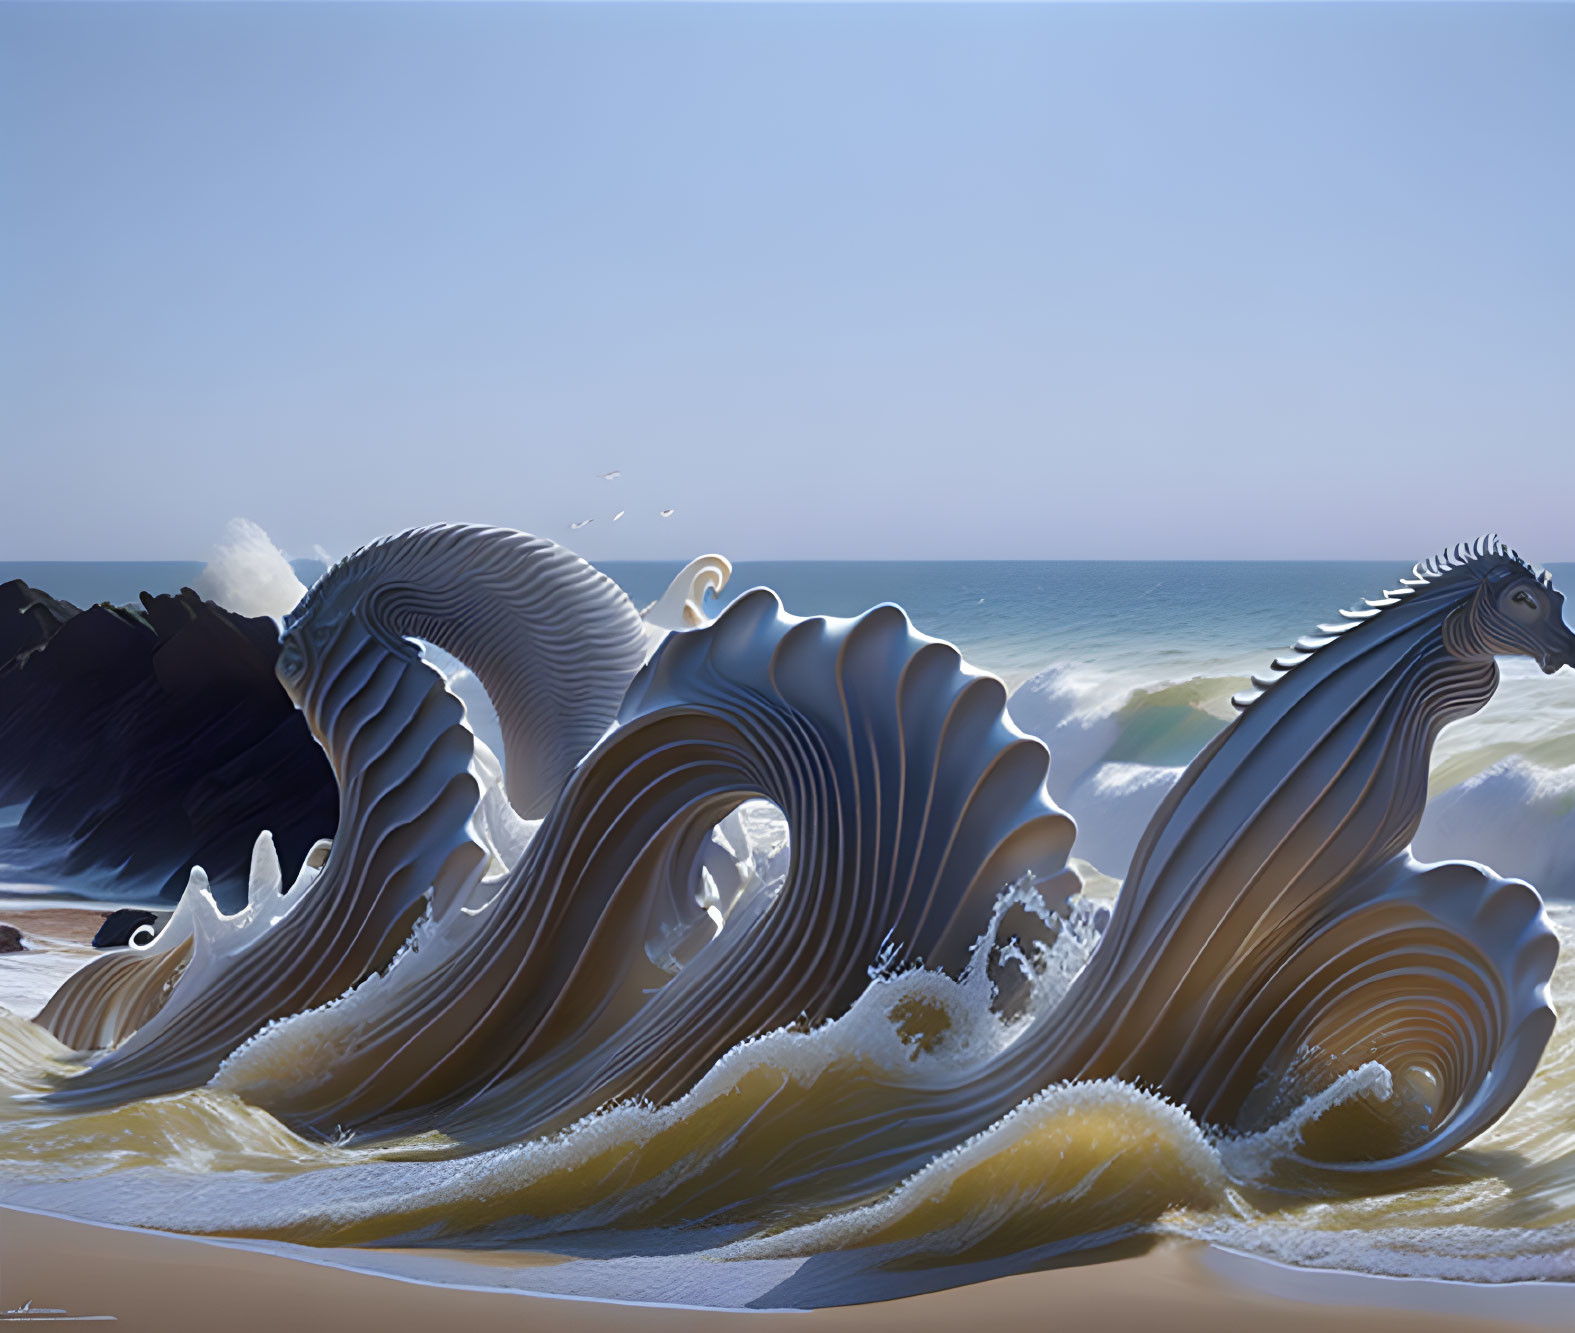 Ocean-themed digital art: Waves as sea creatures on sandy beach